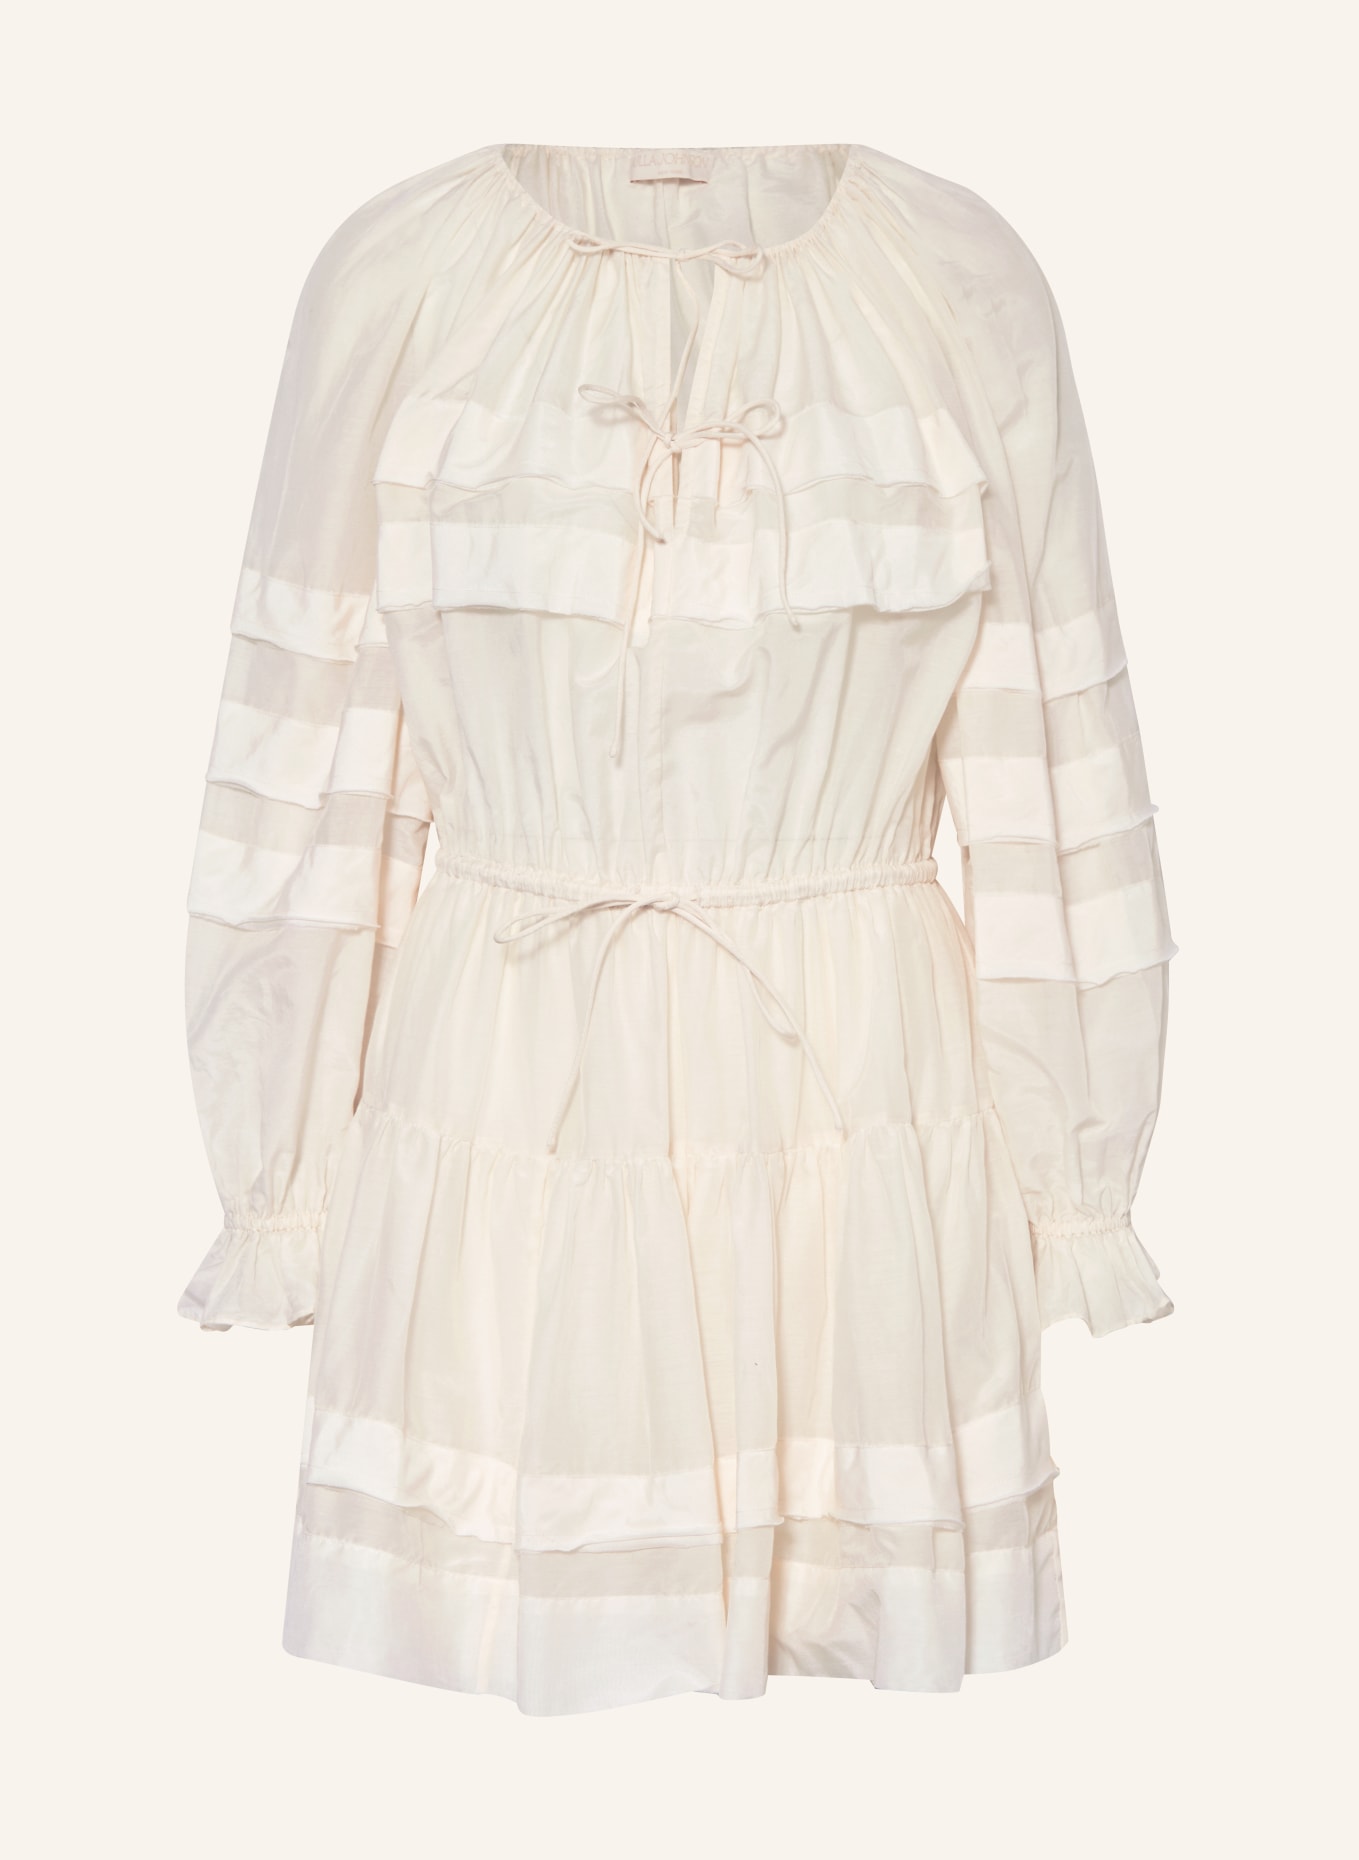 ULLA JOHNSON Kleid POLLY mit Seide, Farbe: ECRU (Bild 1)